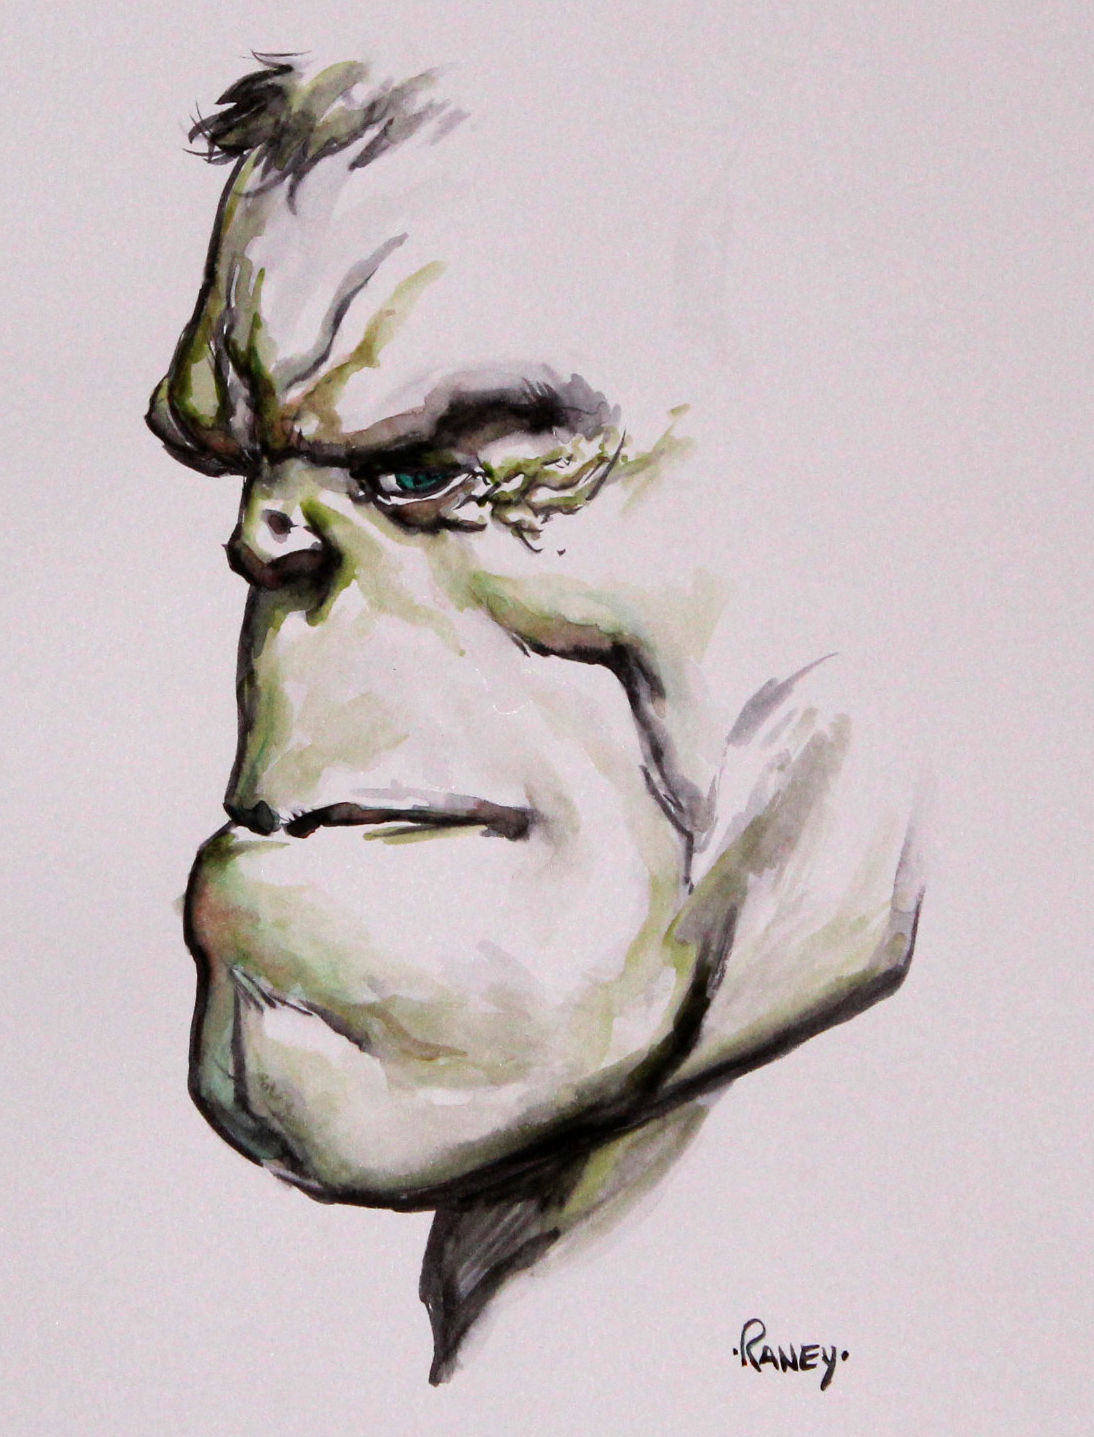 Hulk by Tom Rainey